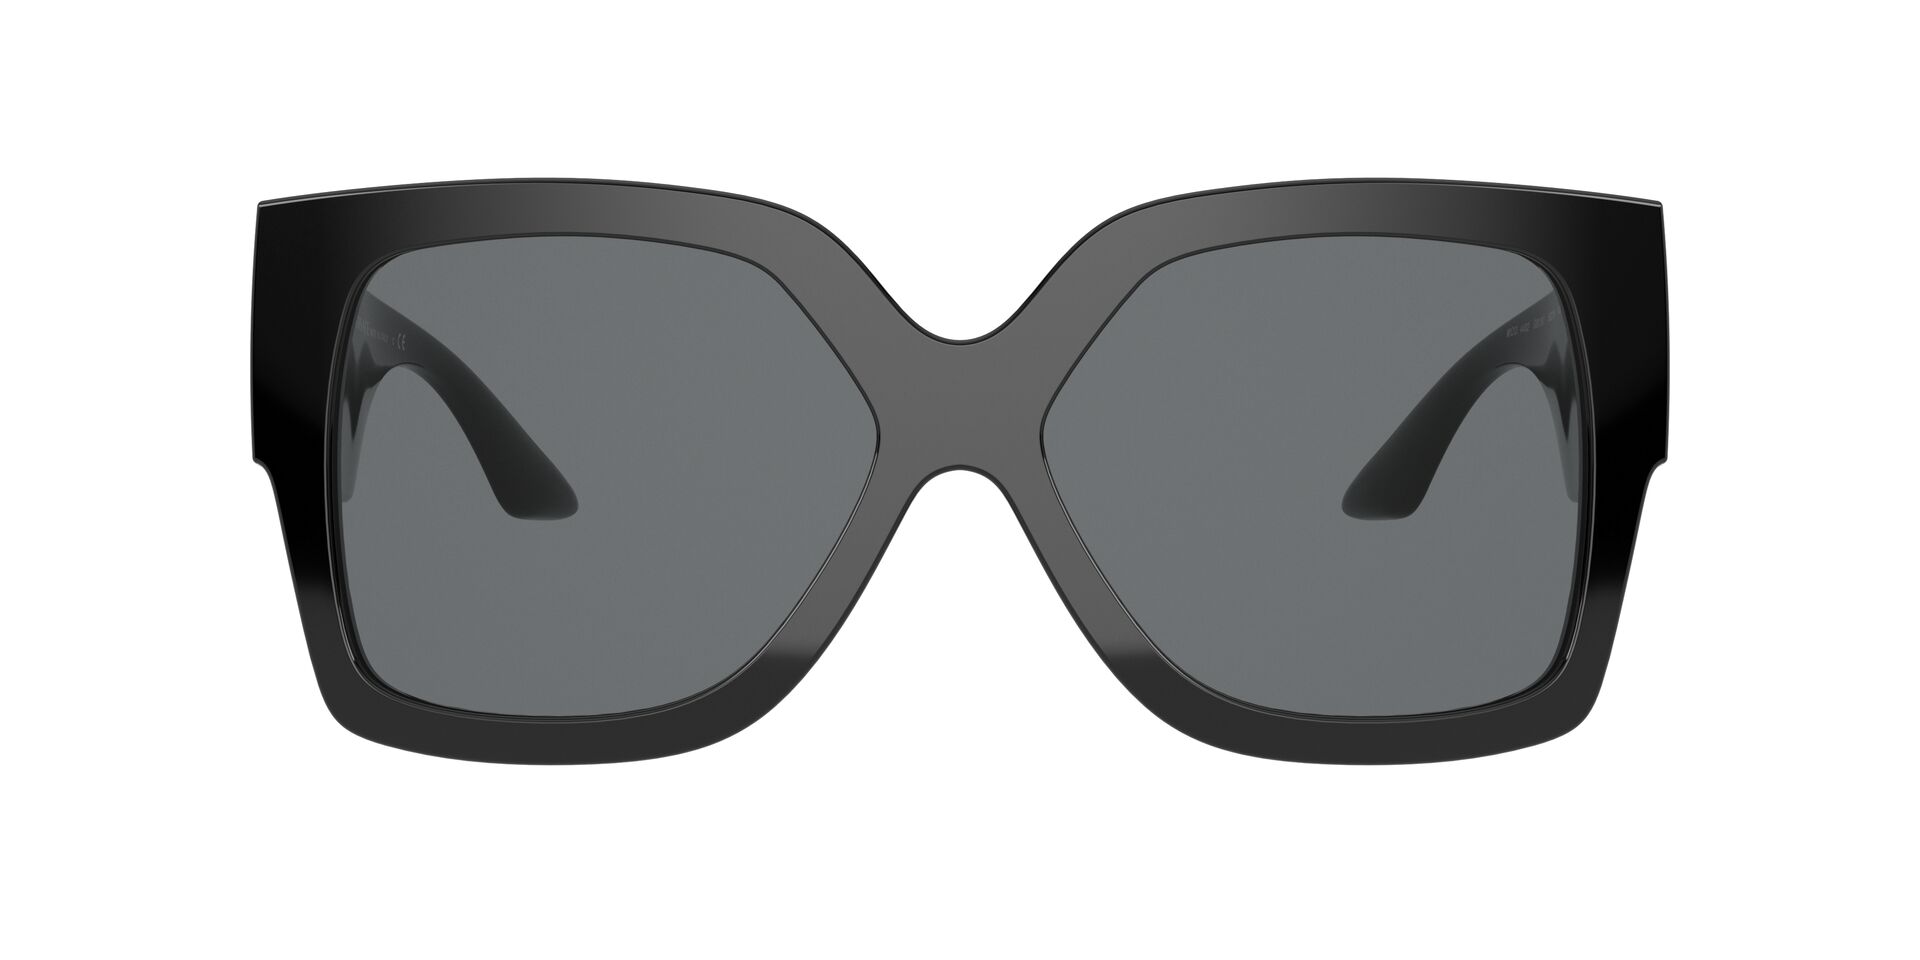 Gafas de sol L+ Aleja Black para Mujer